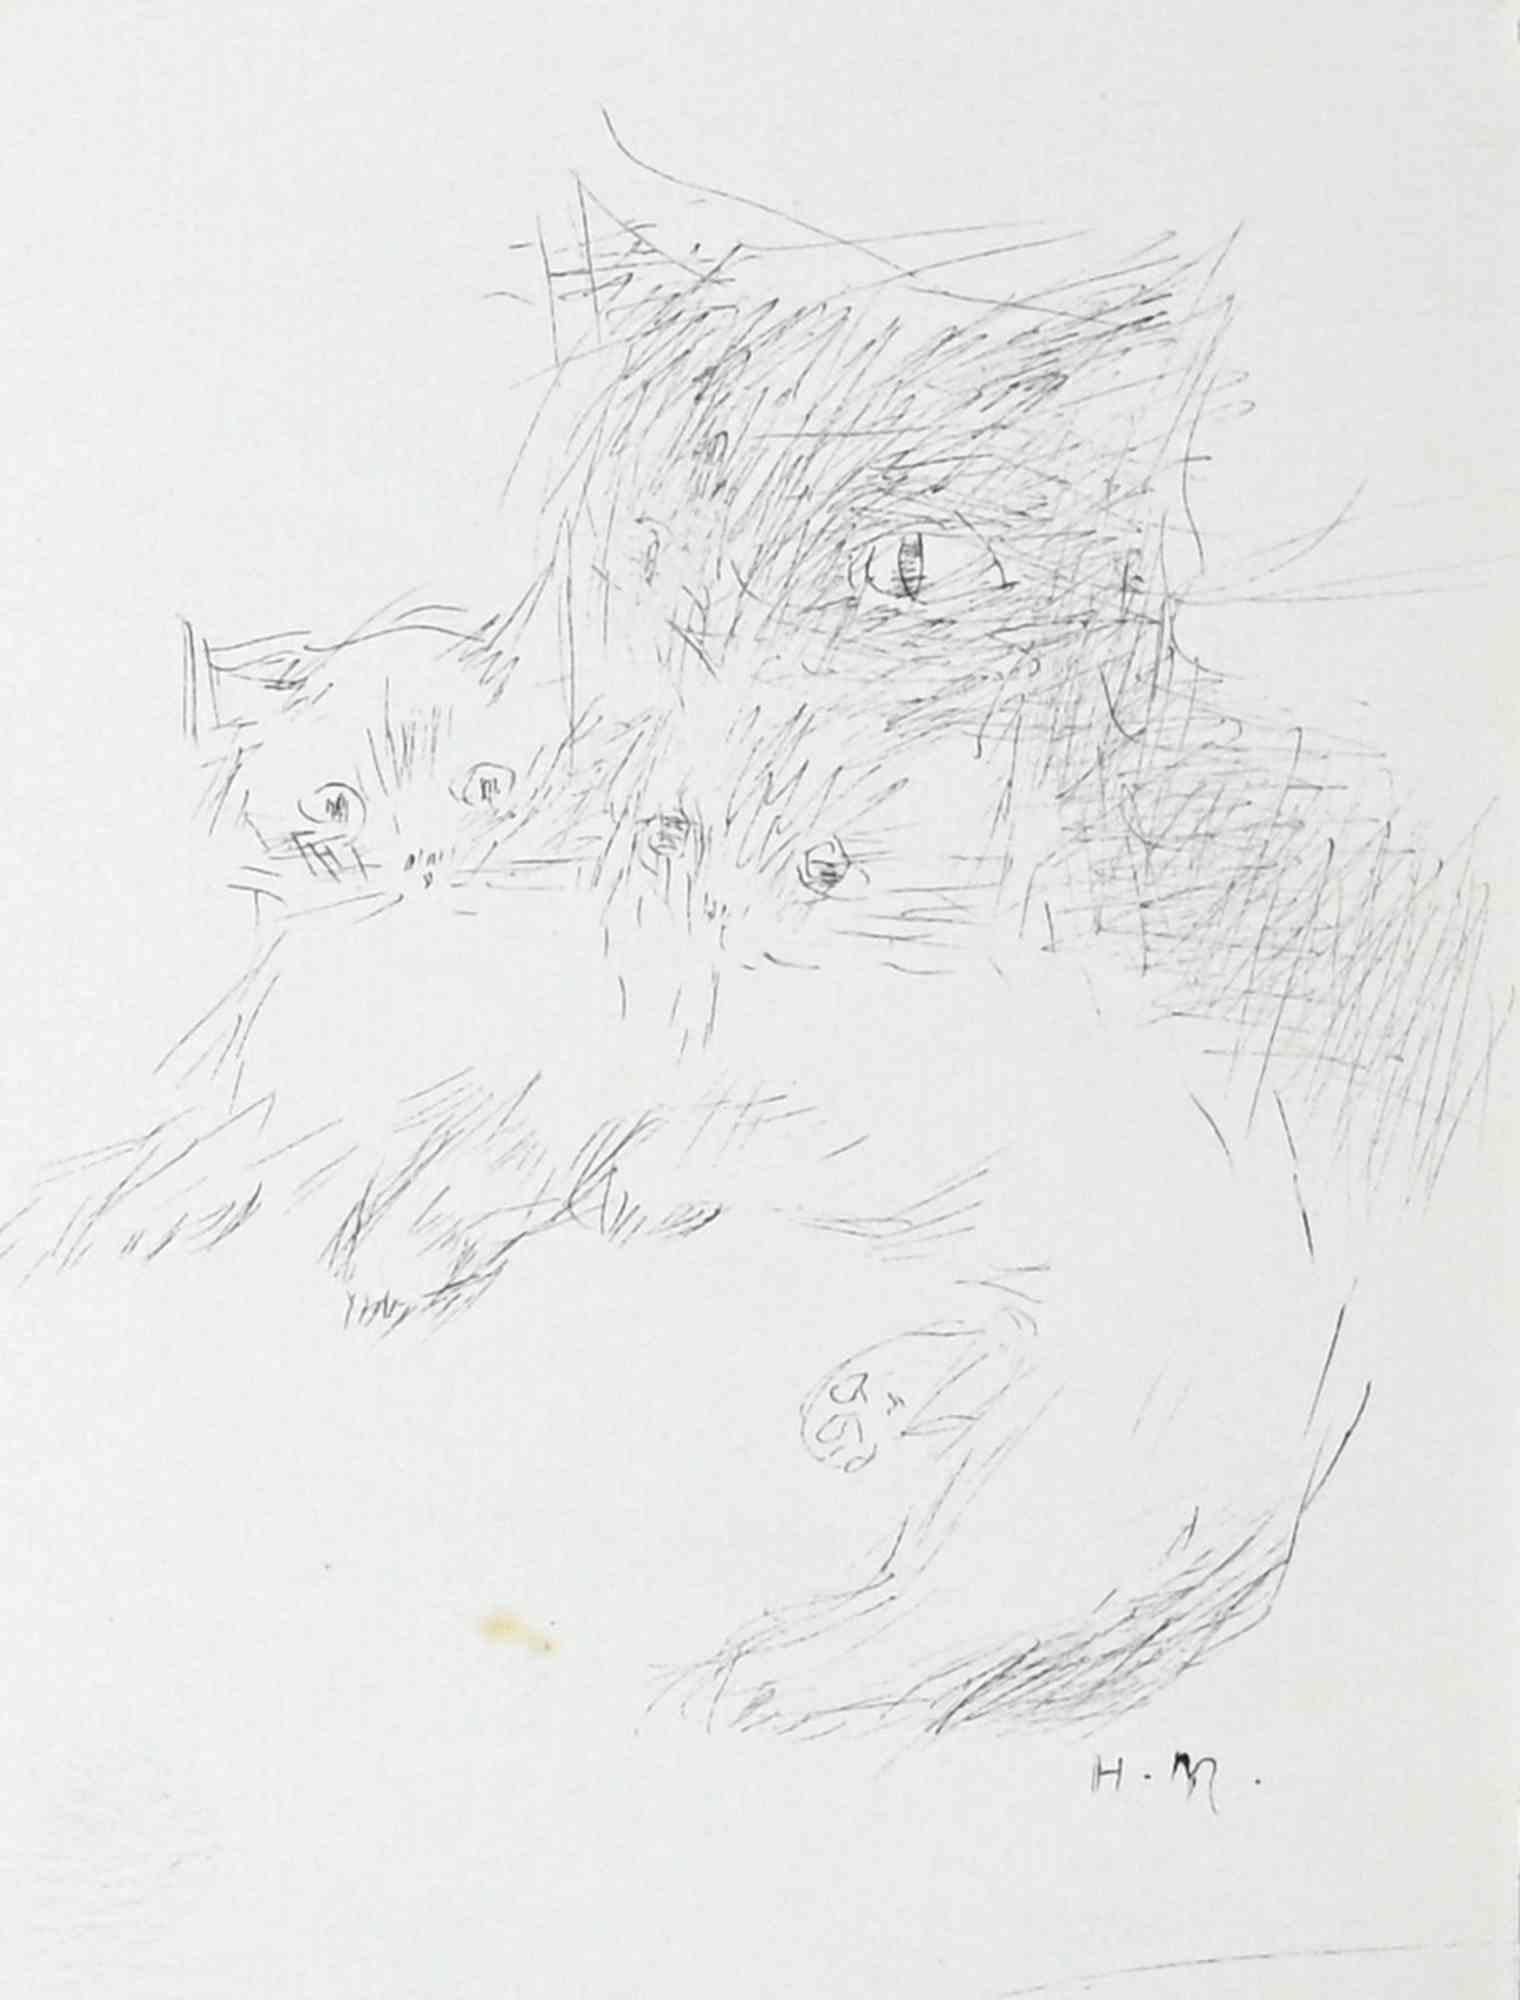 Portrait of Cats View ist eine Originalzeichnung mit Feder von Helène Neveur aus den 1970er Jahren.

Gute Bedingungen.

Das Kunstwerk wird mit sicheren Strichen in einer ausgewogenen Komposition dargestellt.